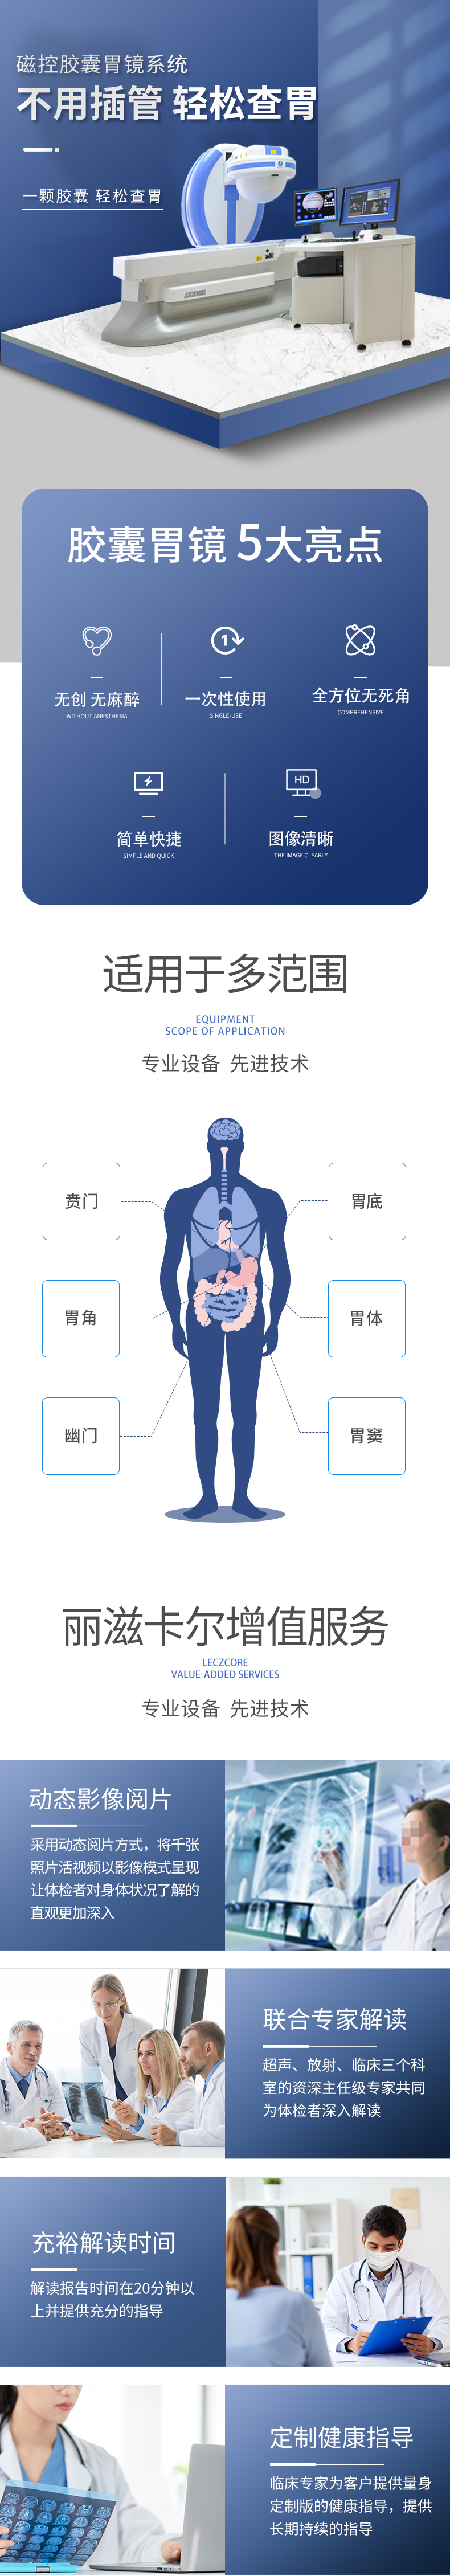 磁控胶囊胃镜系统(图1)